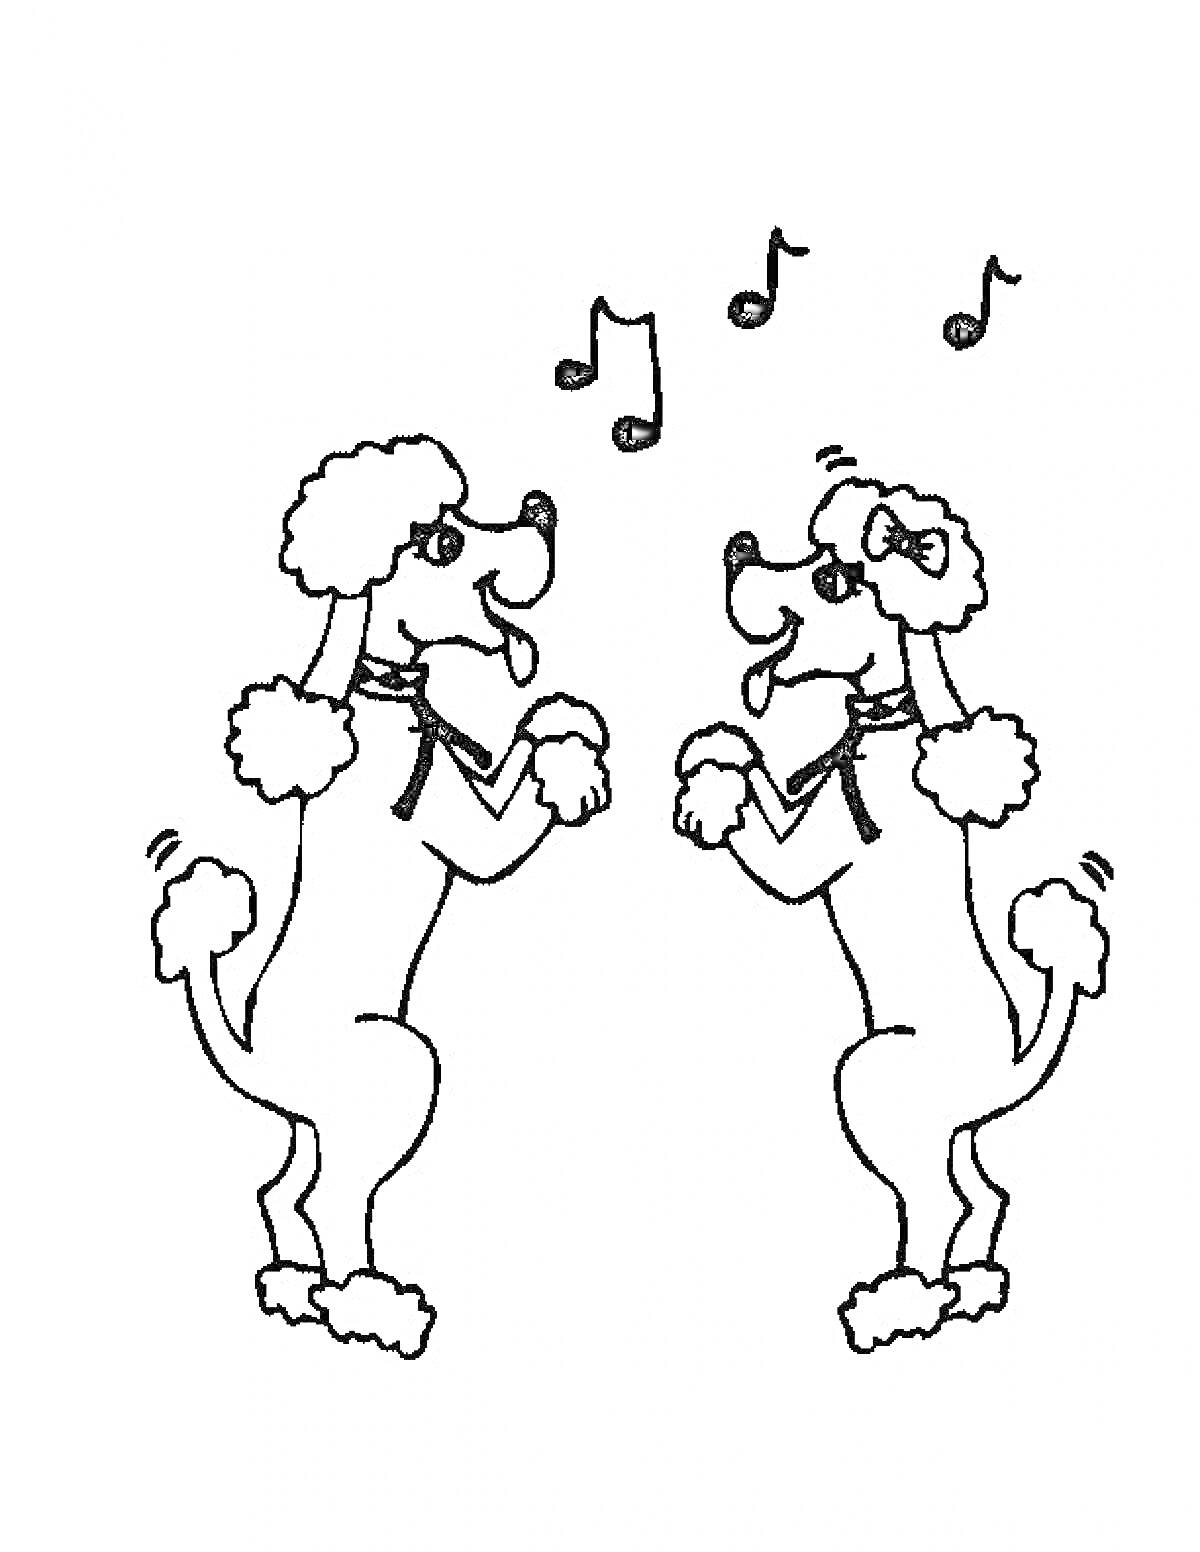 Два пуделя, стоящие на задних лапах, с двумя музыкальными нотами между ними